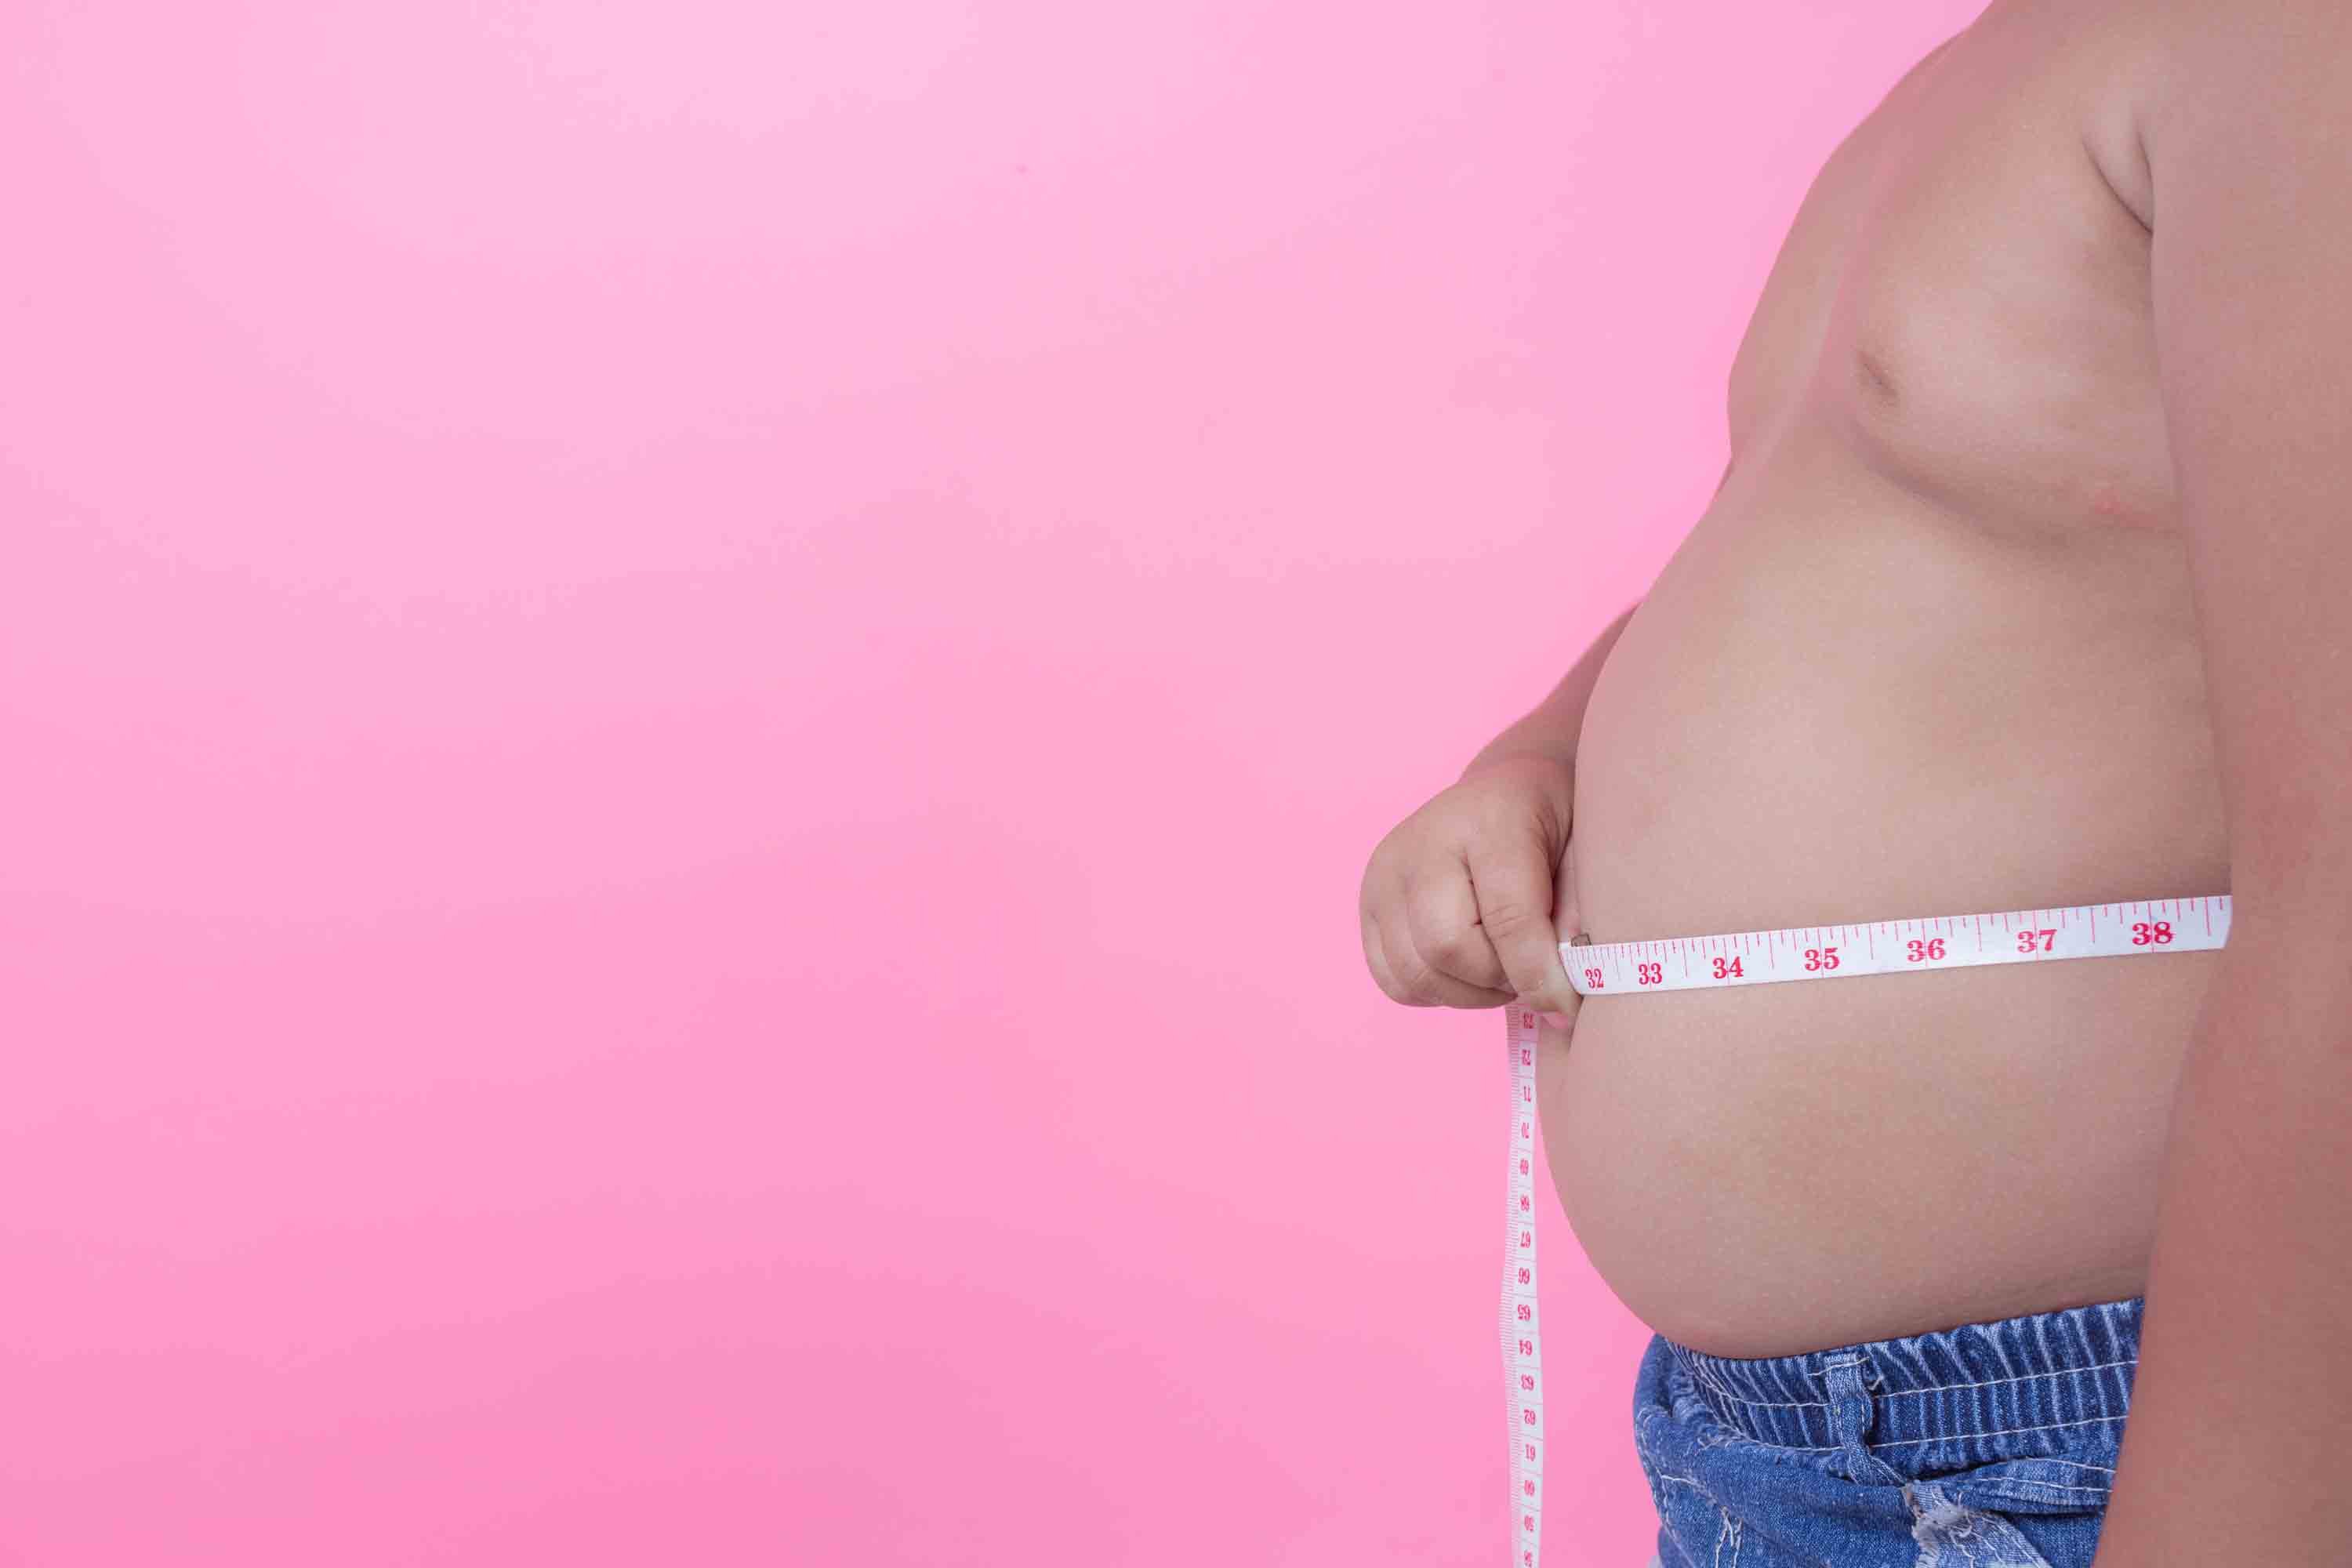 La mesure du tour de taille permet de diagnostiquer une obésité abdominale